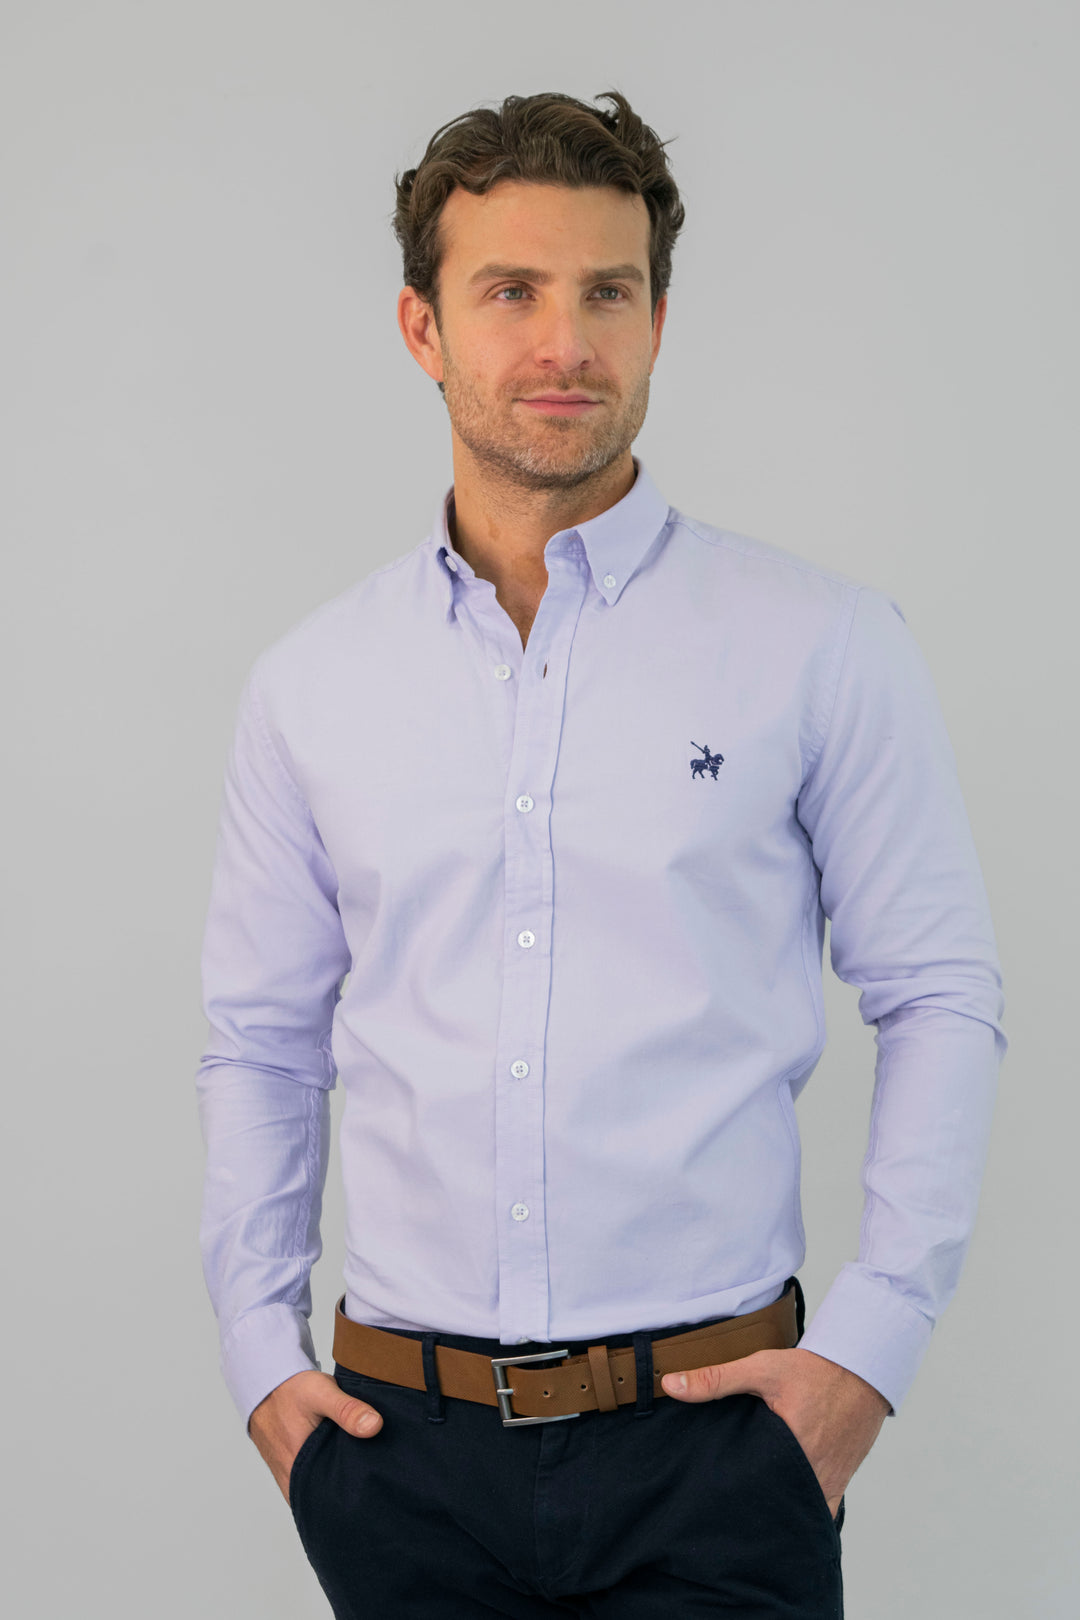 Camisa para hombre tipo oxford color lila. Confeccionada con hilos 100% algodón.